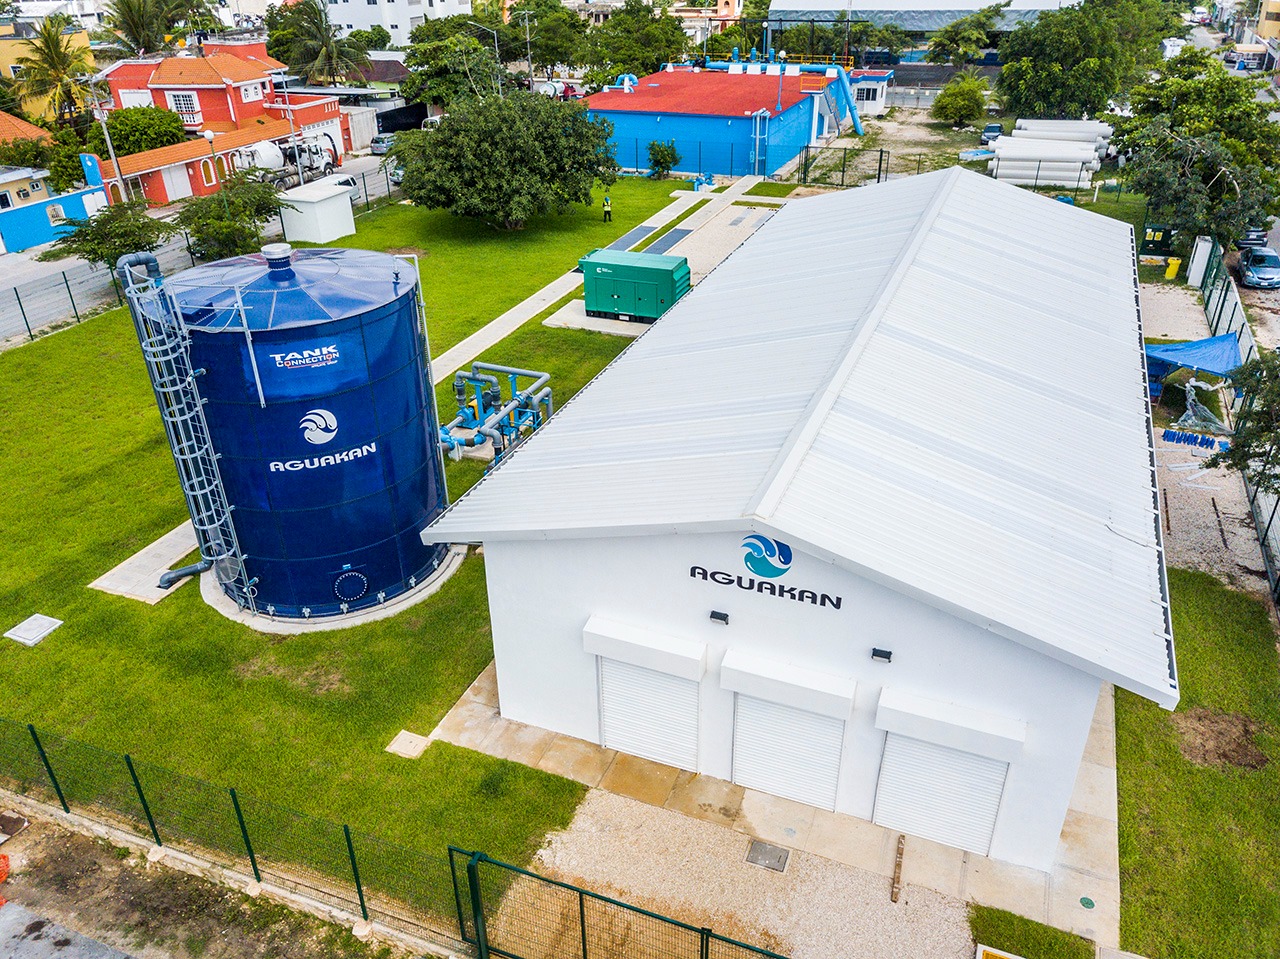 Nuevos desarrollos hidráulicos en Cancún garantizan agua potable para todos, gracias a la concesión aprobada por el Cabildo colonial y la empresa de bancos